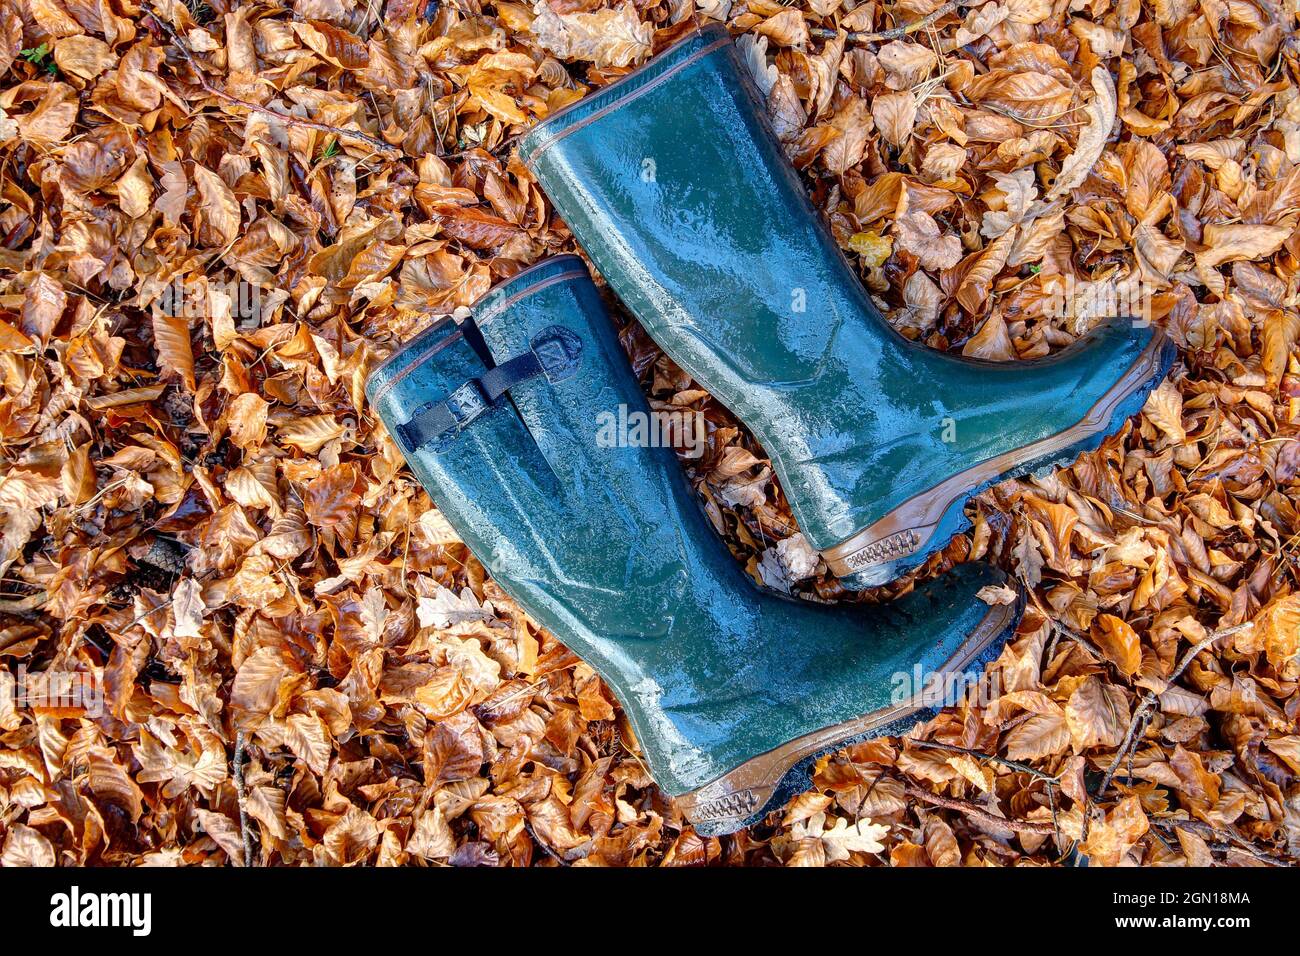 Stivali in gomma verde e bagnata si trovano nelle foglie colorate e regalano al giorno d'autunno un tocco di colore. Foto Stock